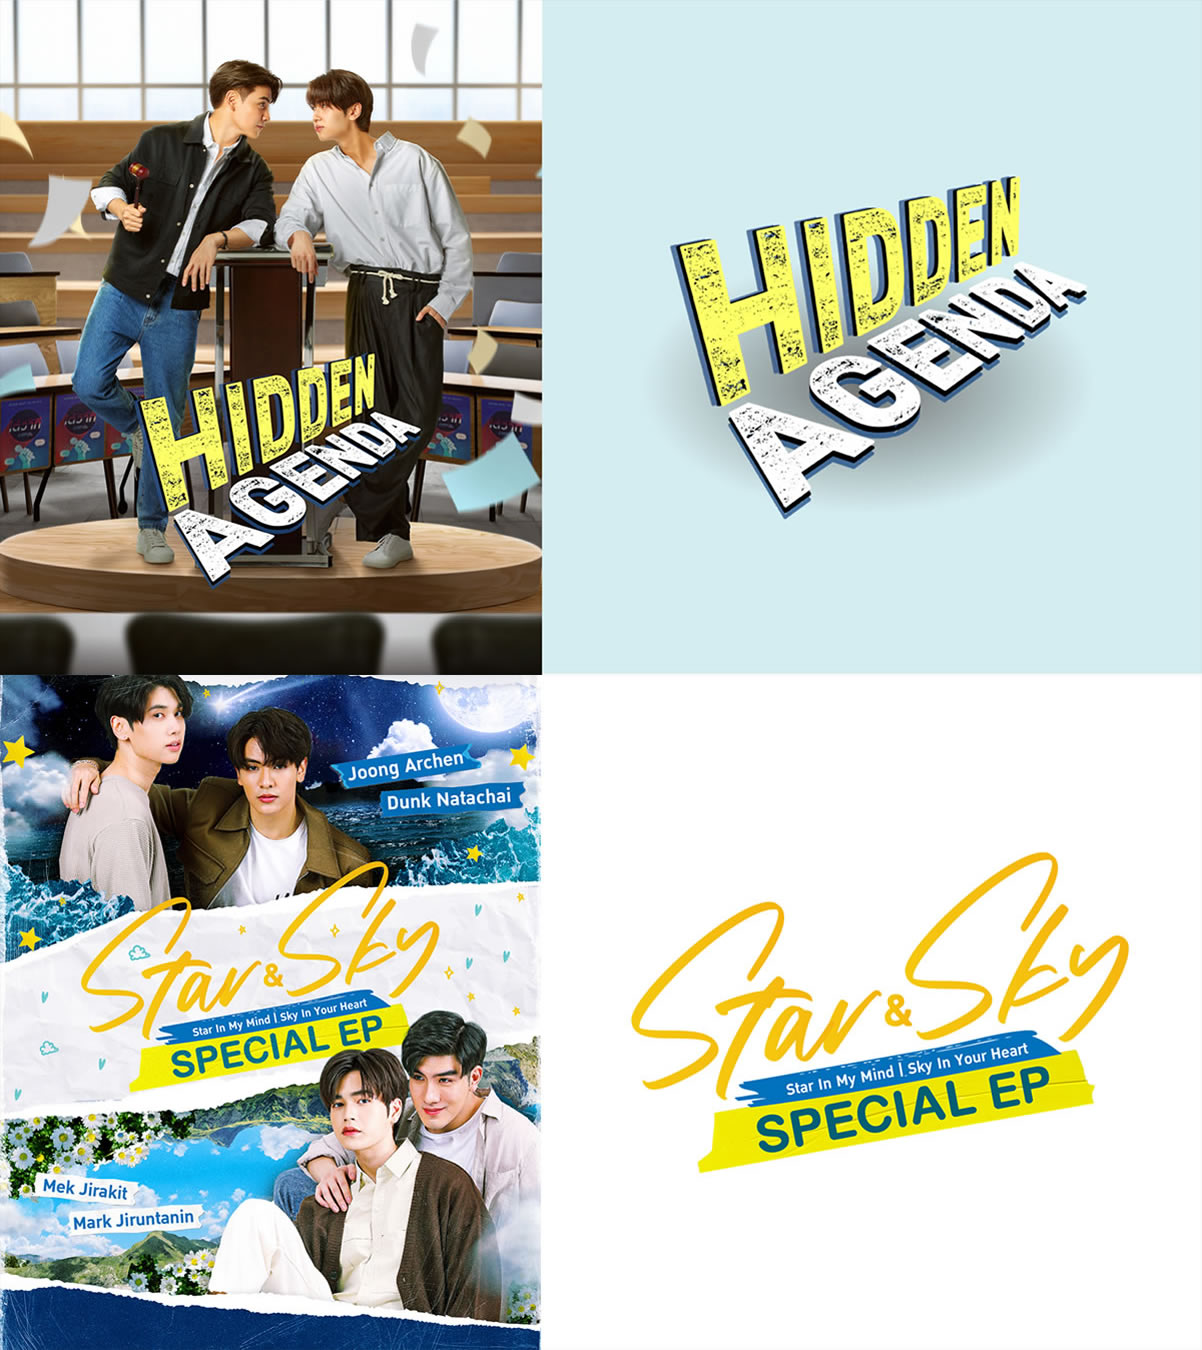 Joong＆Dunk出演の「Hidden Agenda」「Star and Sky：Special Episode」がTELASAで配信開始